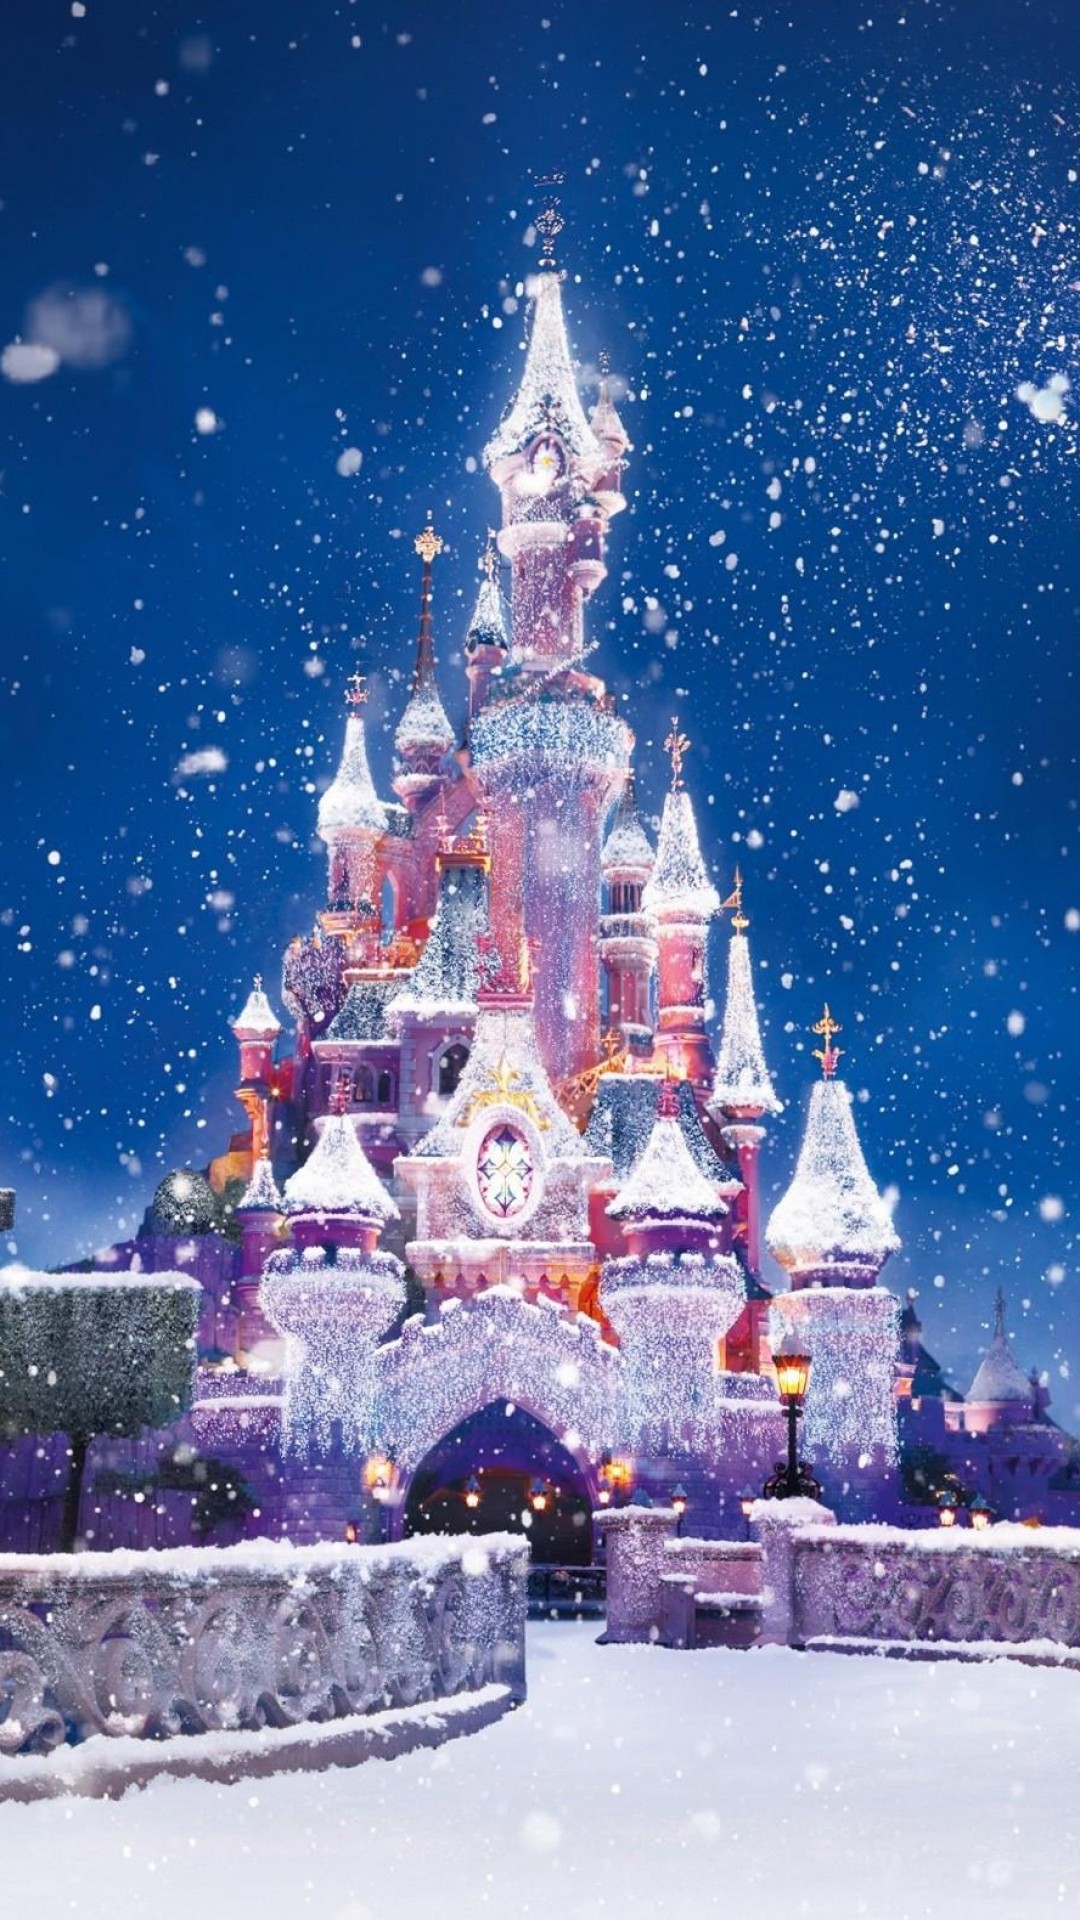 ディズニーの壁紙,空,クリスマス・イブ,冬,世界,雪